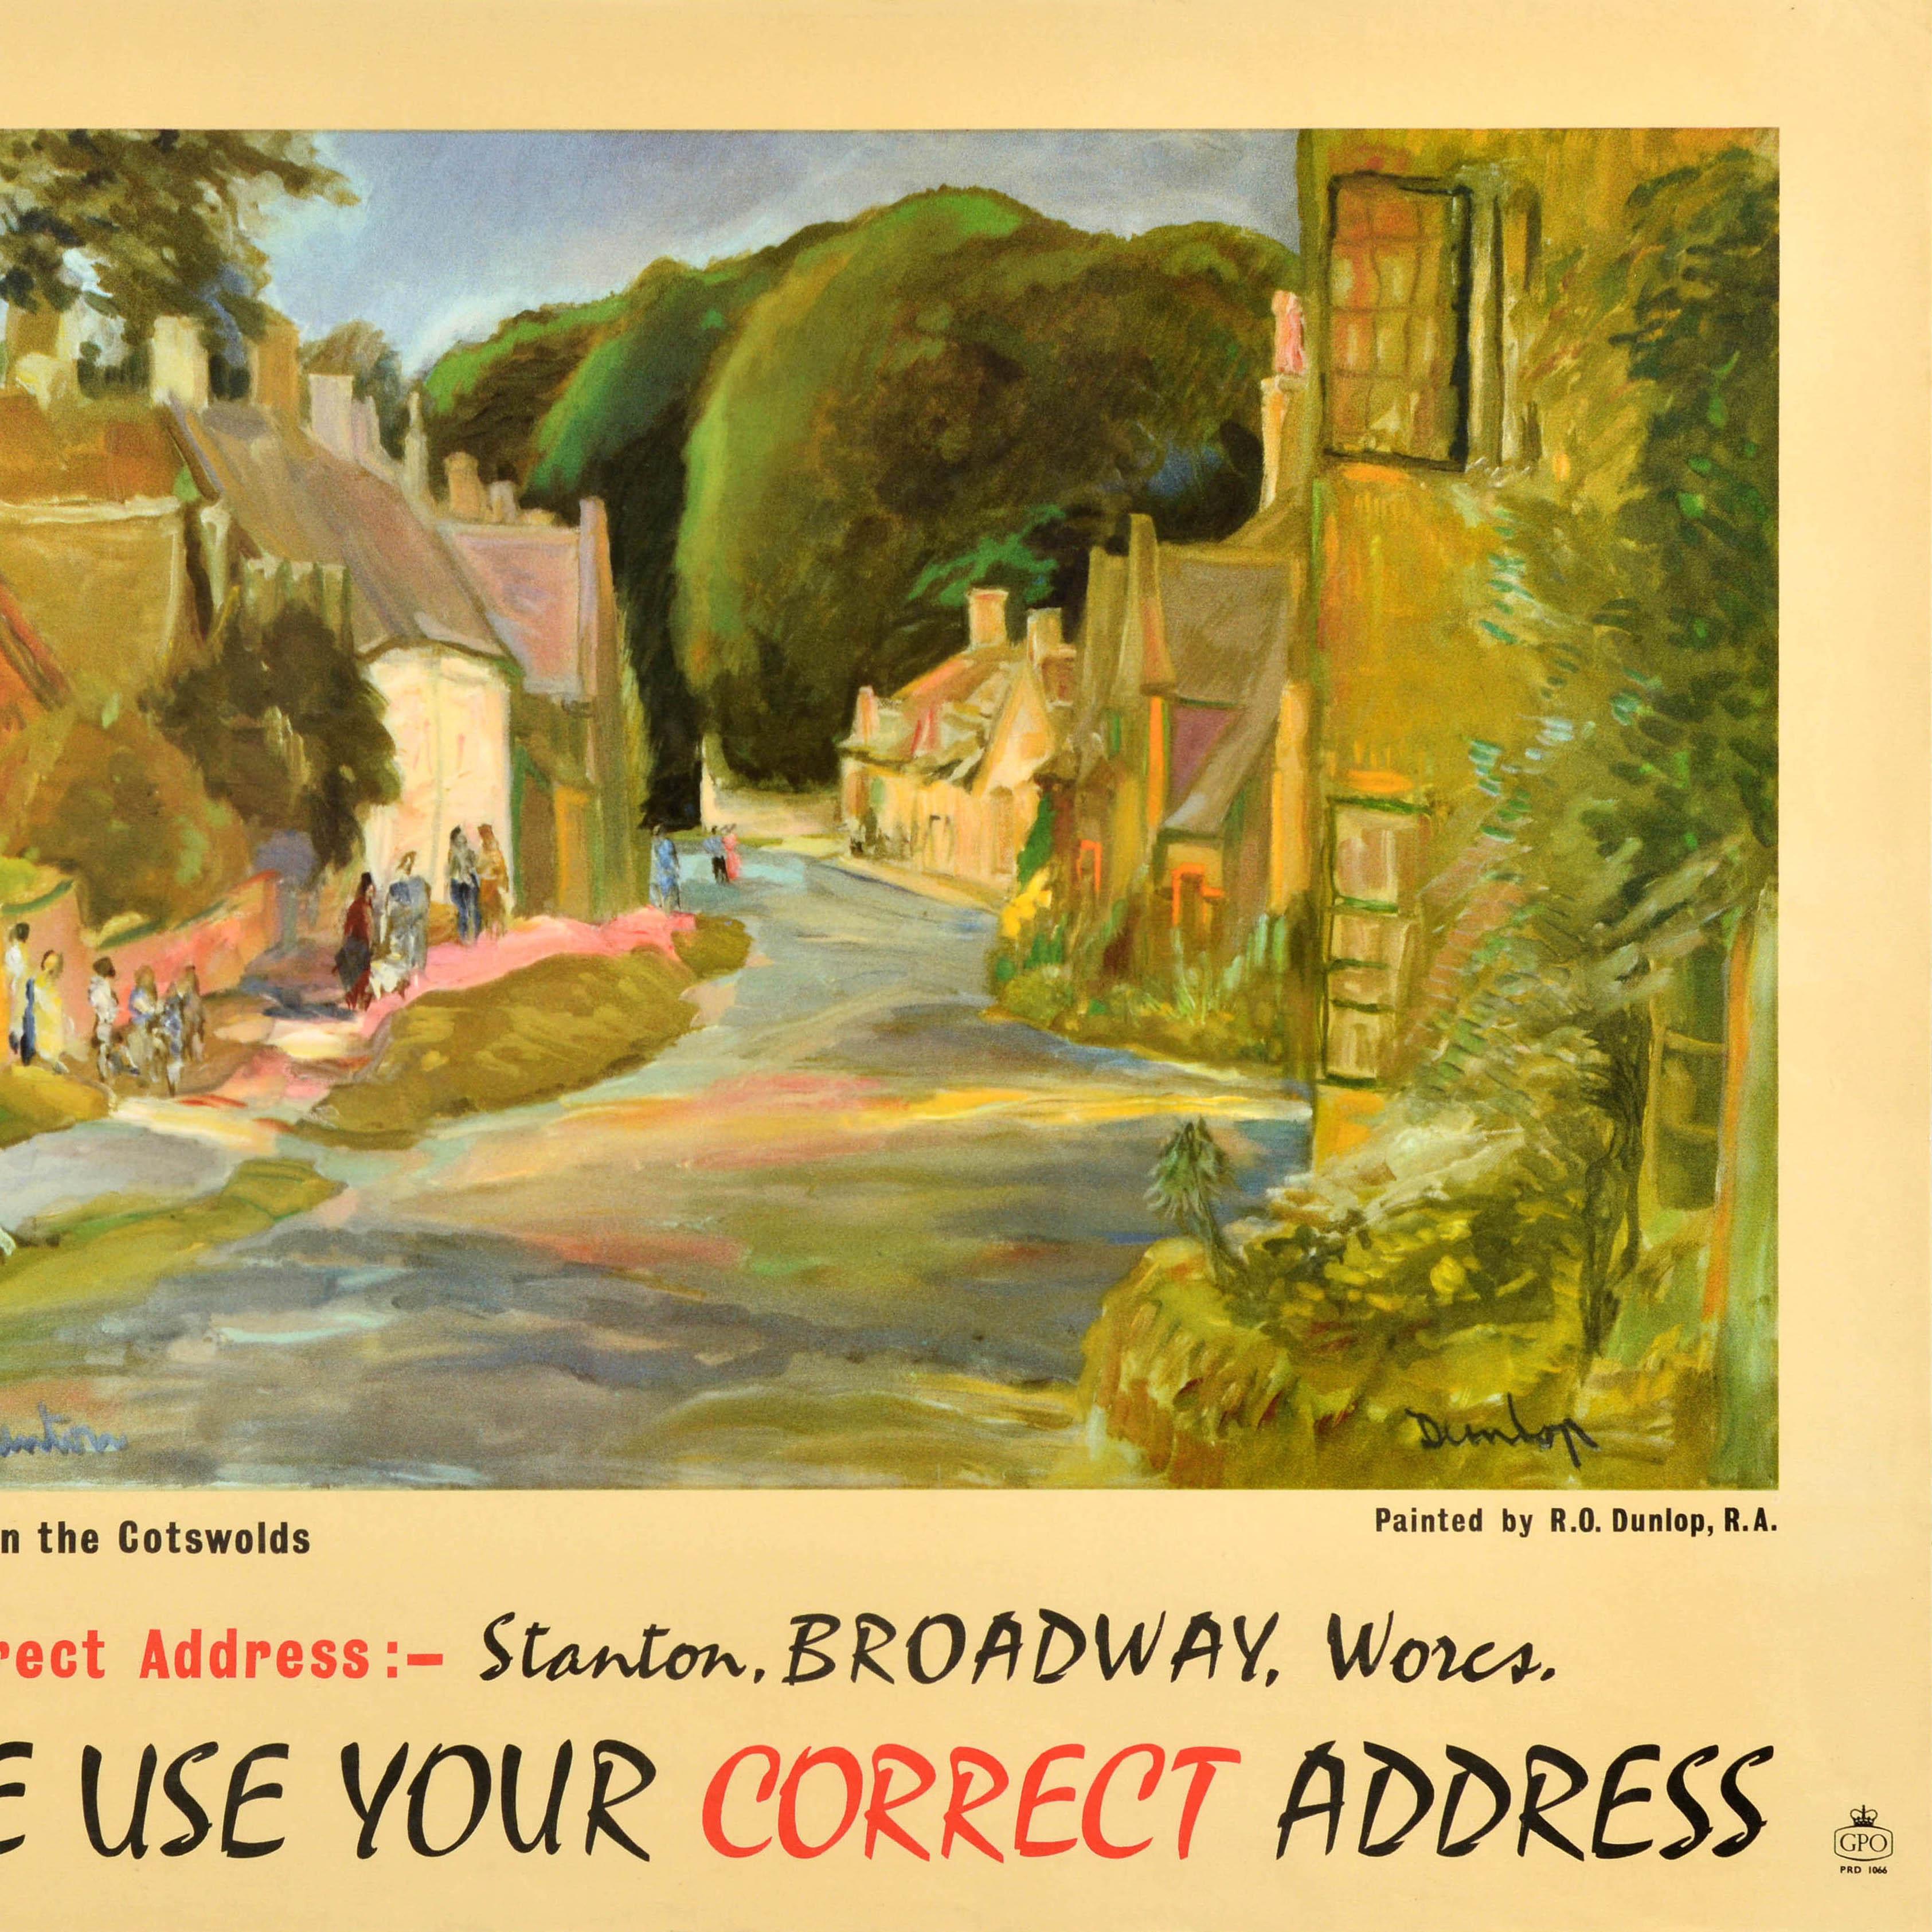 Original Vintage General Post Office Plakat - Dies ist Stanton in den Cotswolds Korrekte Adresse: Stanton, Broadway, Wores Bitte geben Sie Ihre korrekte Adresse an - mit einer farbenfrohen, malerischen Dorfansicht des irischen Schriftstellers und